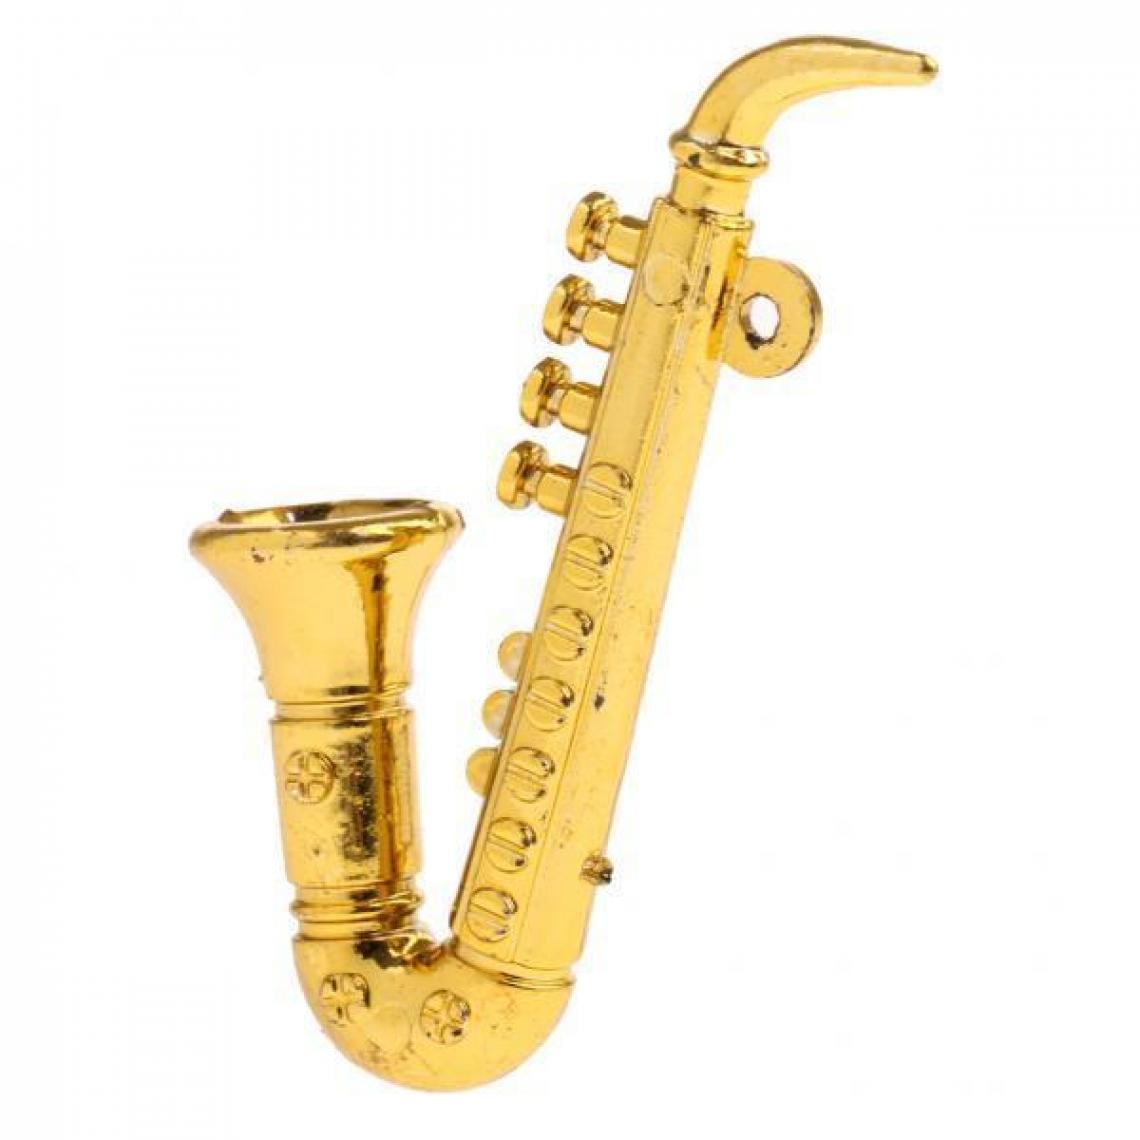 marque generique - saxophone miniature de maison de - Accessoires maquettes